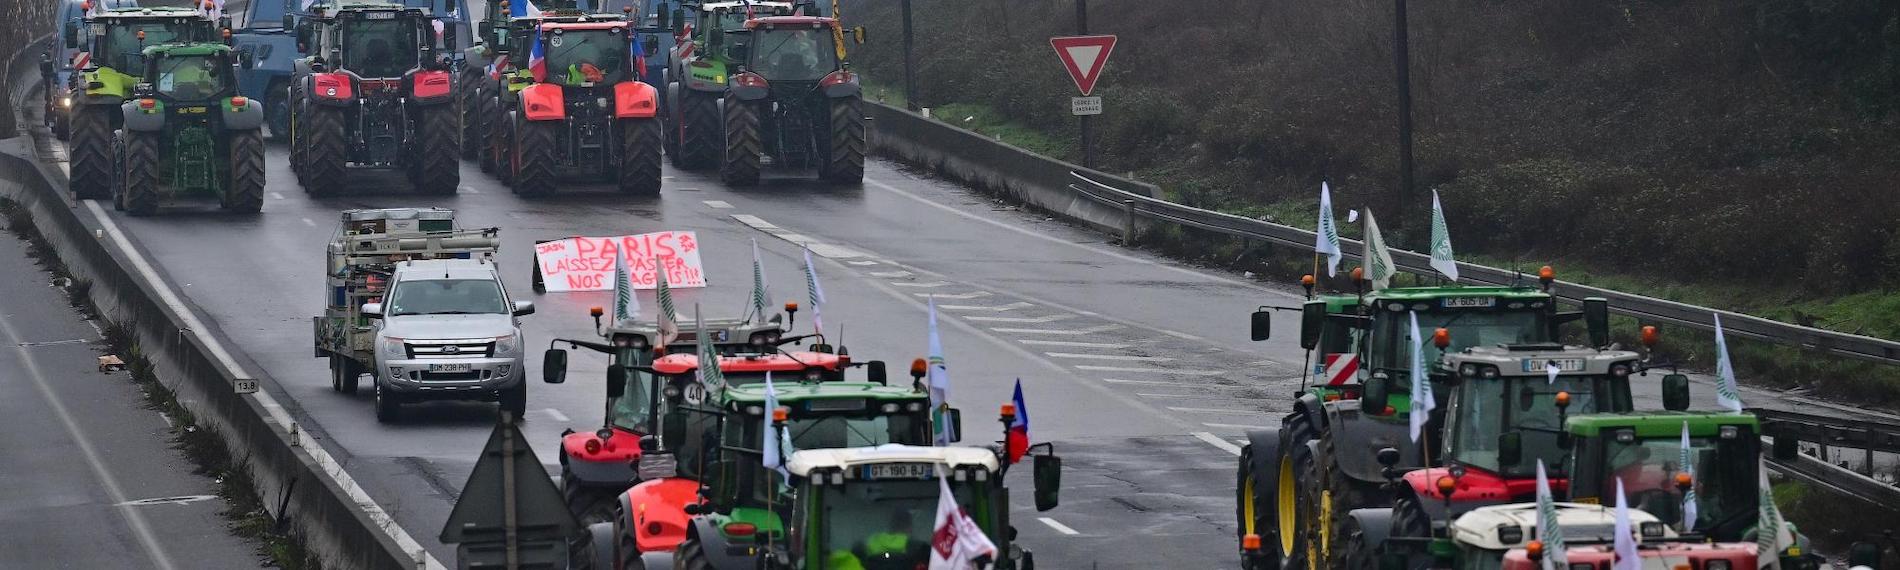 Las protestas agrarias se extienden por Europa.